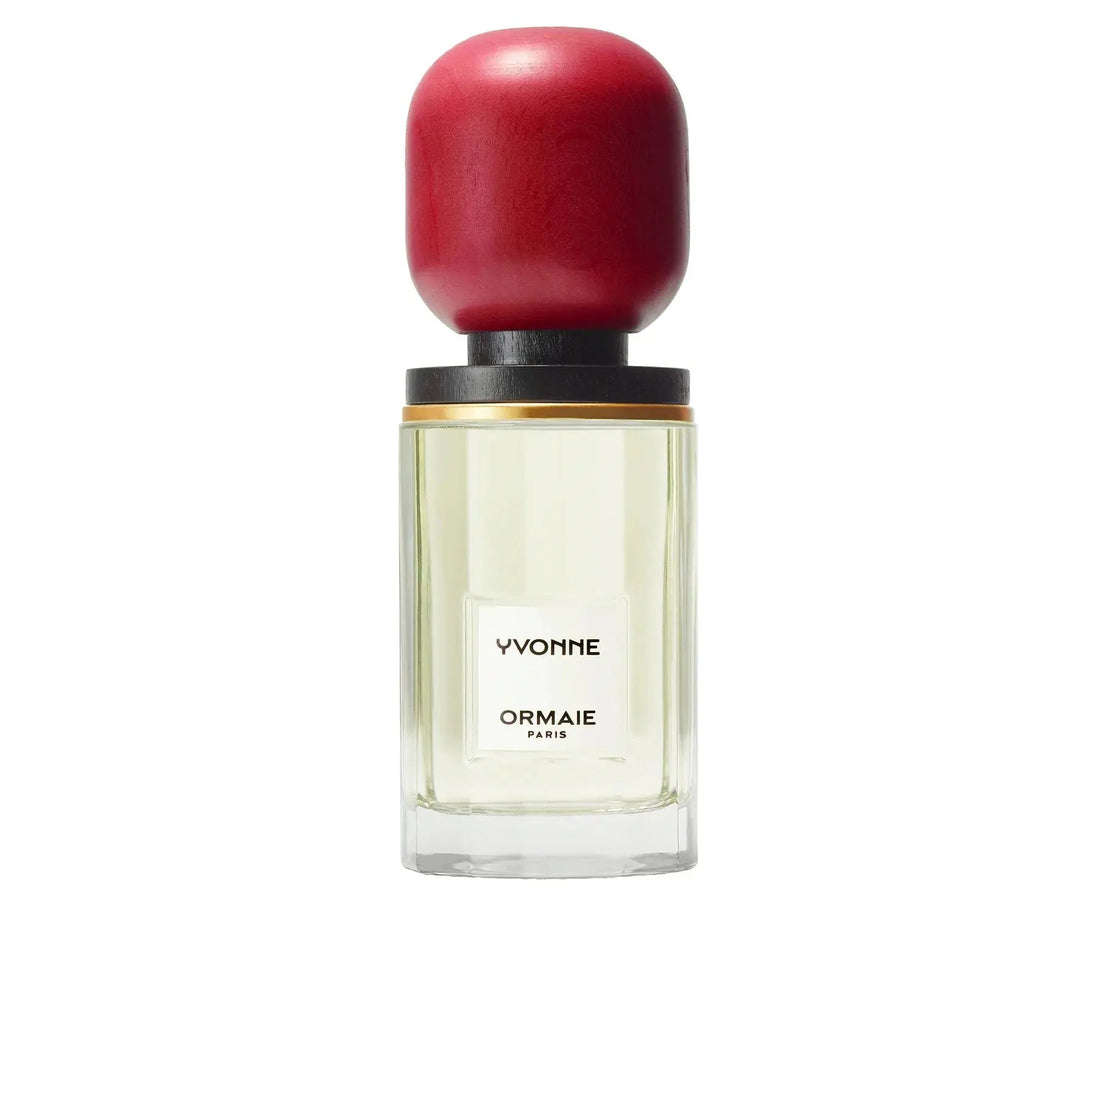 Now Yvonne au de parfum - 50 ml